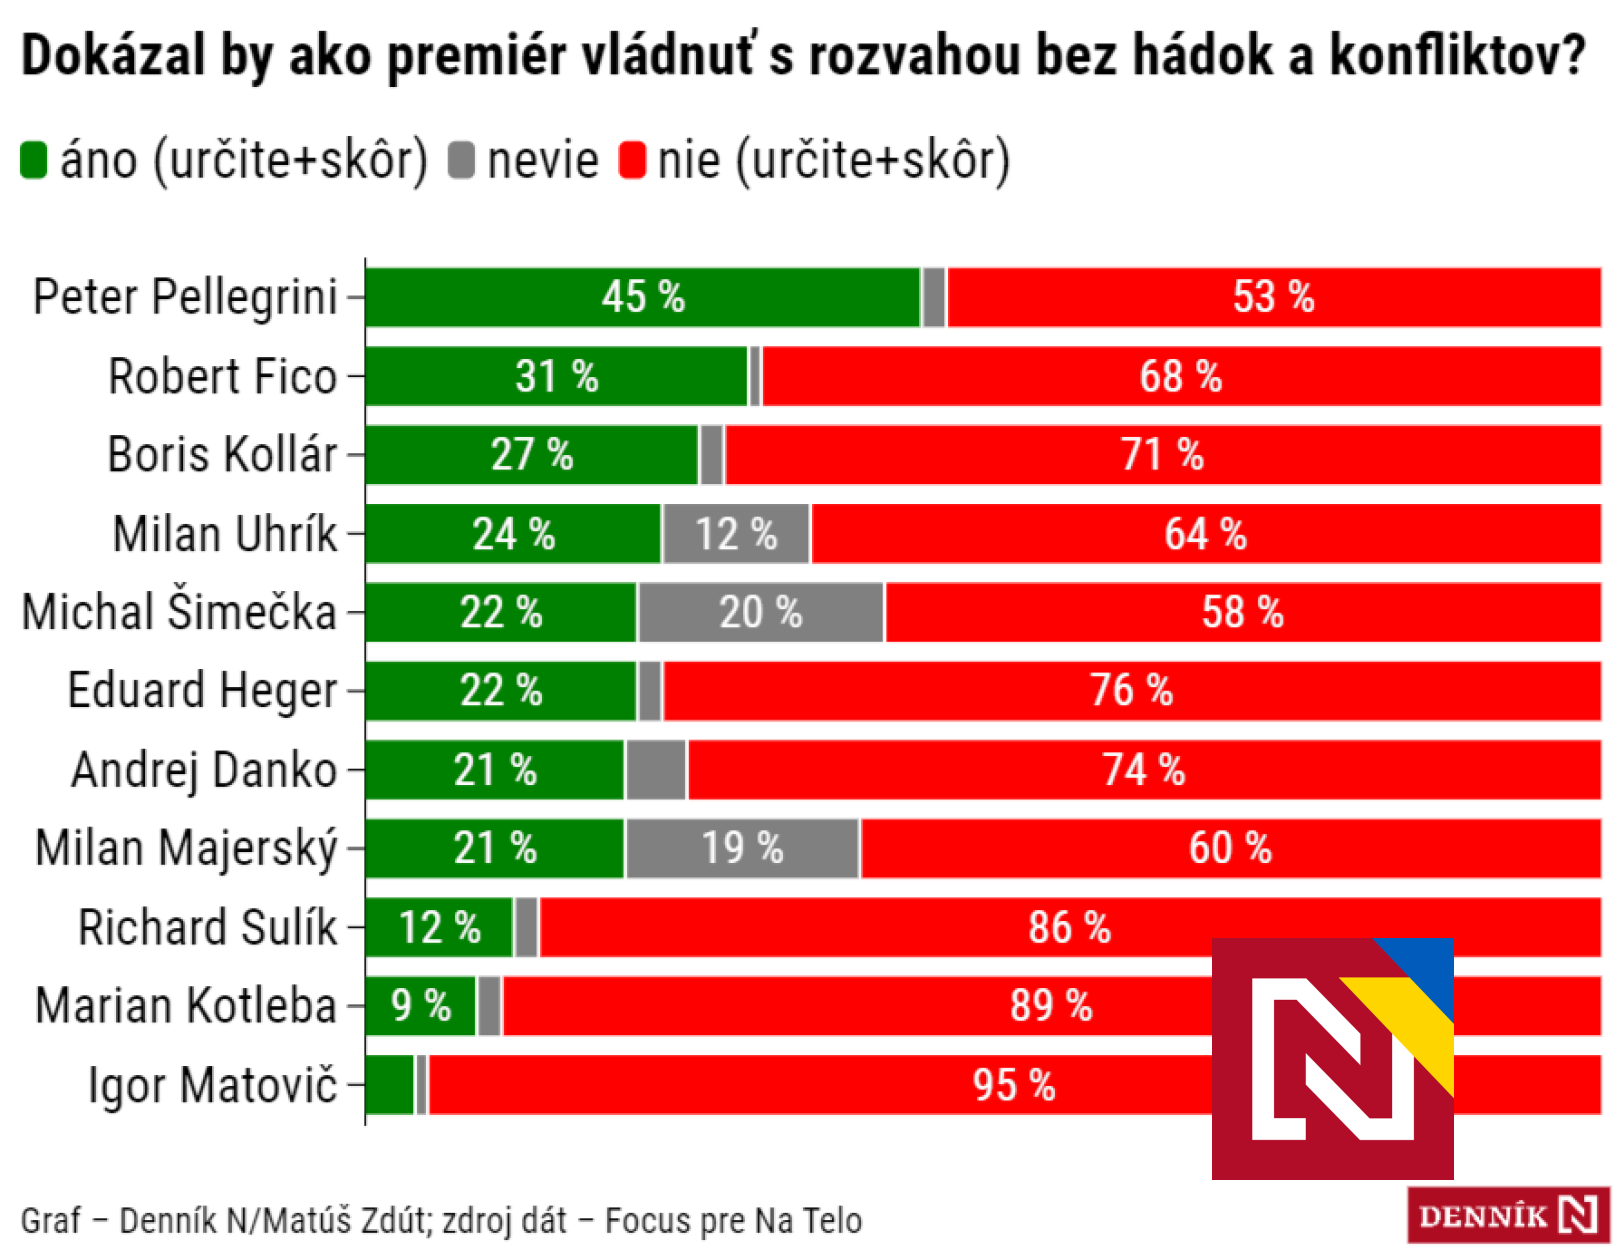 Qui pourrait gouverner sans querelles ?  Les gens font le plus confiance à Pellegrini, Matovič a terminé derrière Kotleb (enquête Focus)